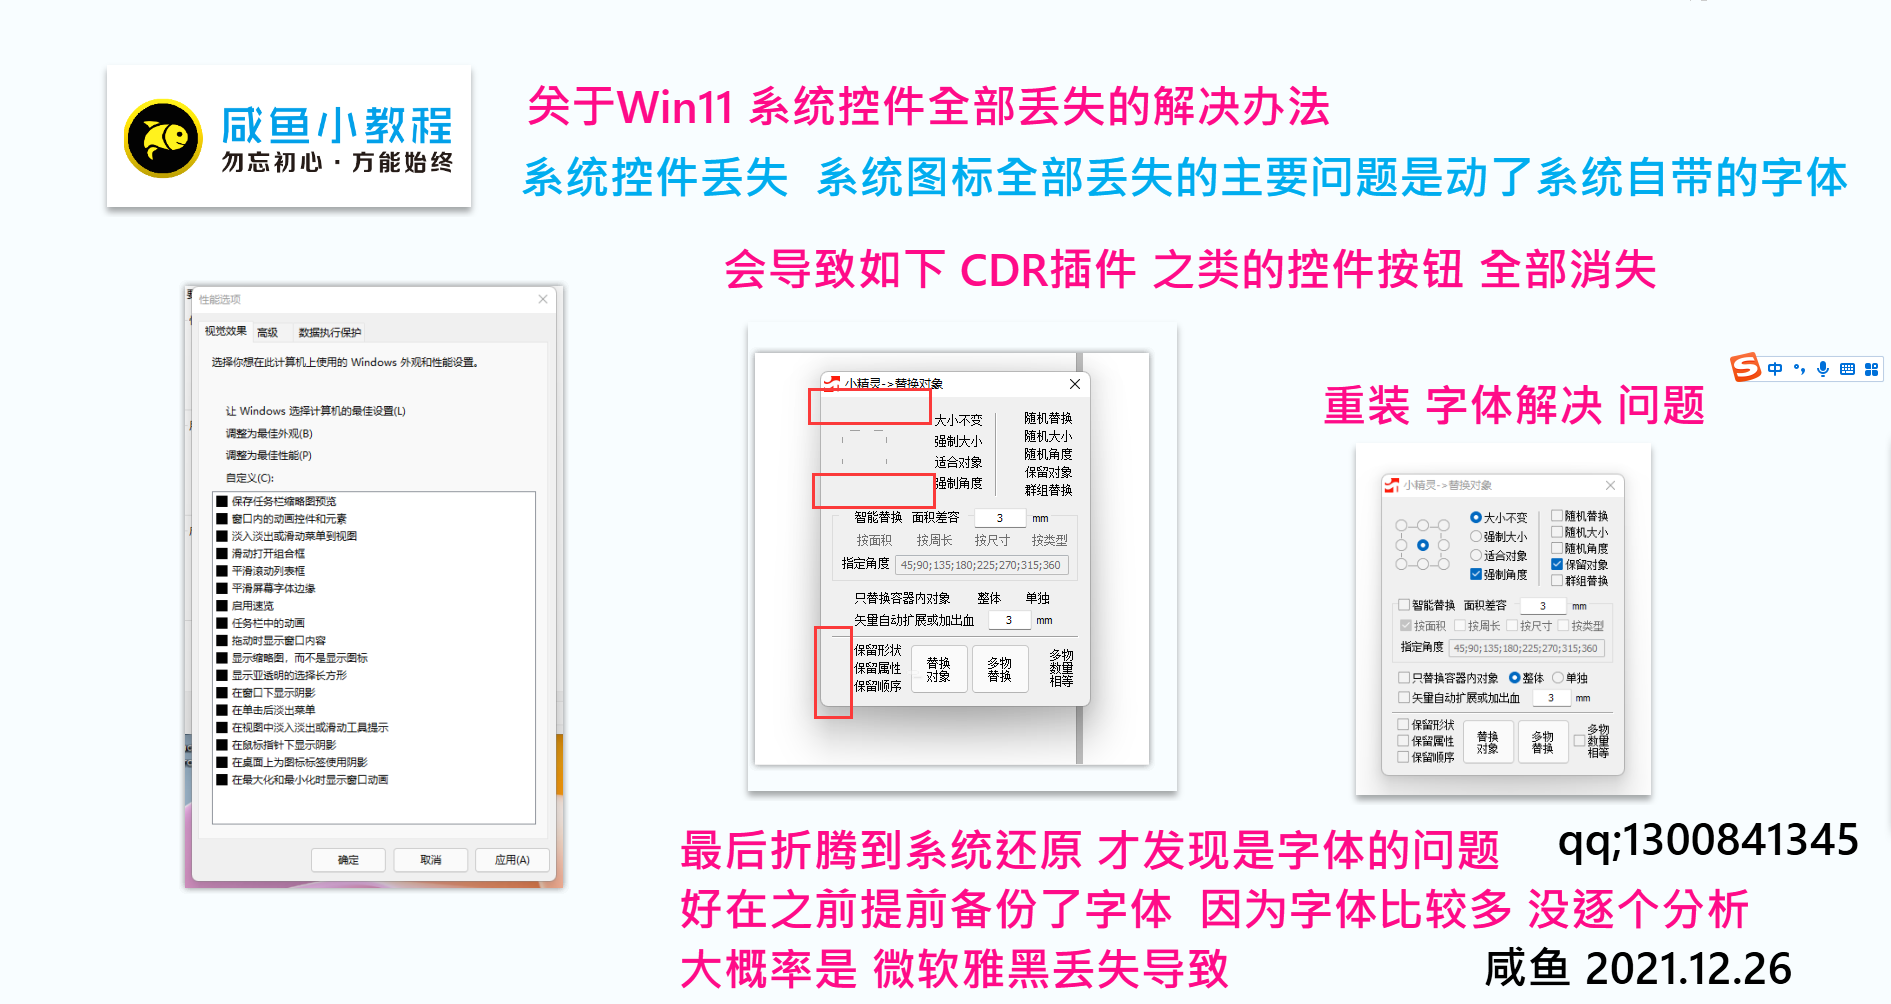 WIN11 系统按钮控件、按钮消失-系统图标丢失解决办法{tag}(1)